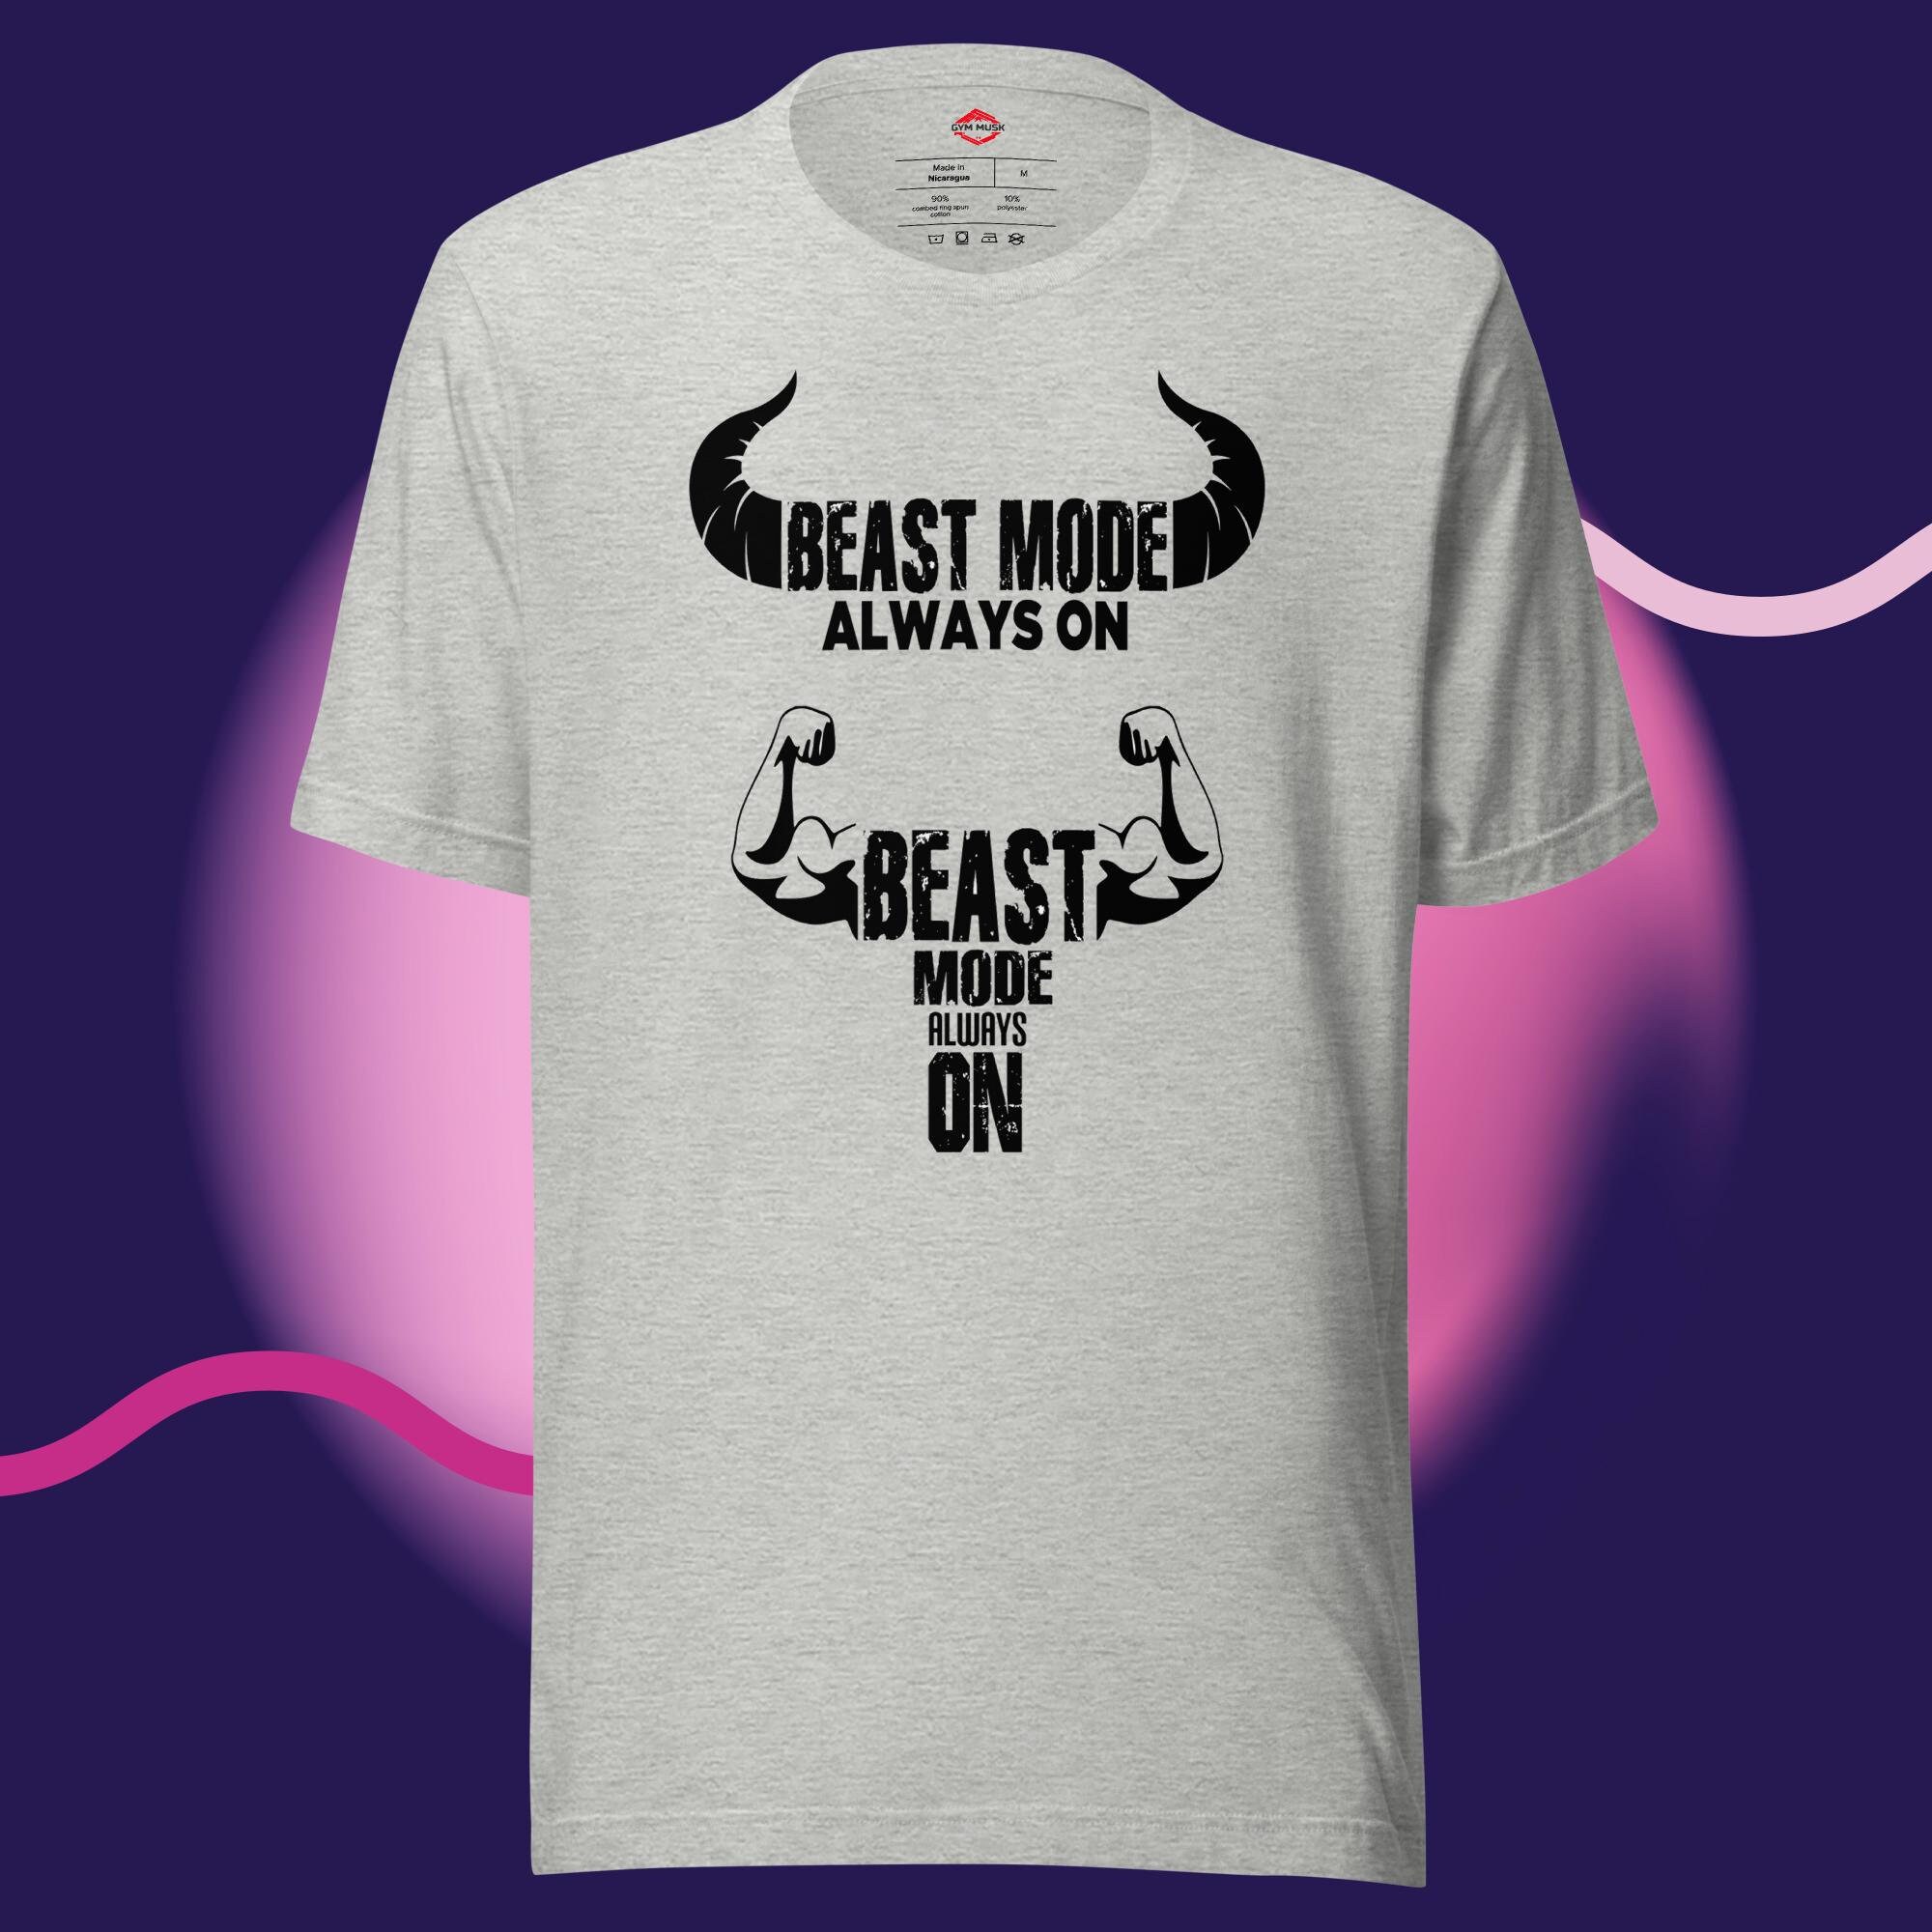 Camiseta de primera calidad para mujer con certificado GYM RAT